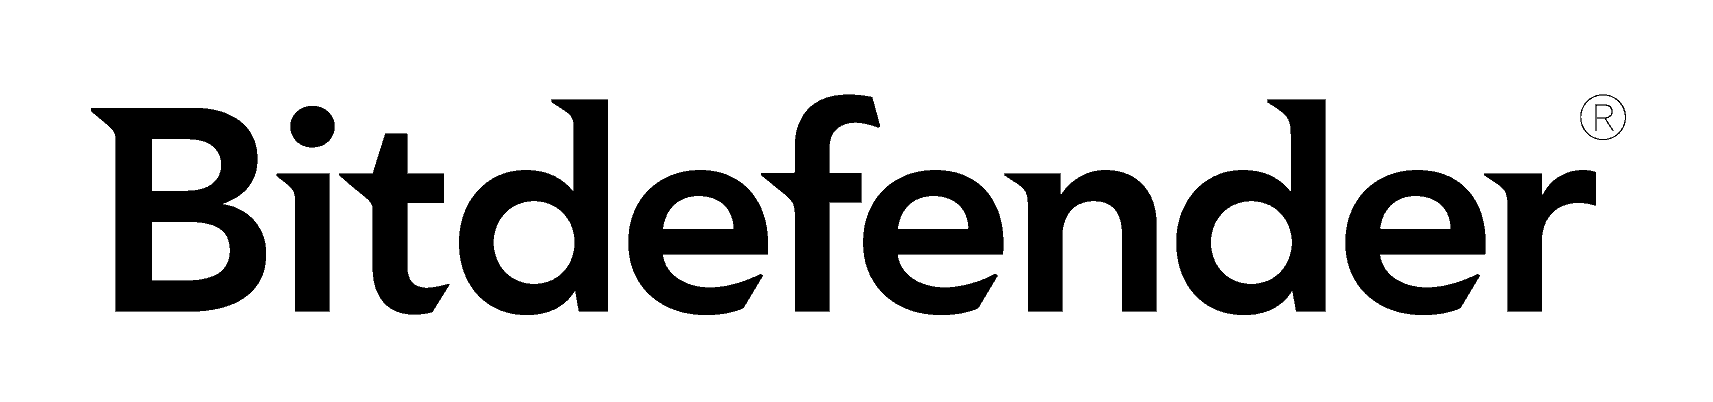 Bitdefender Logo - Product Logo